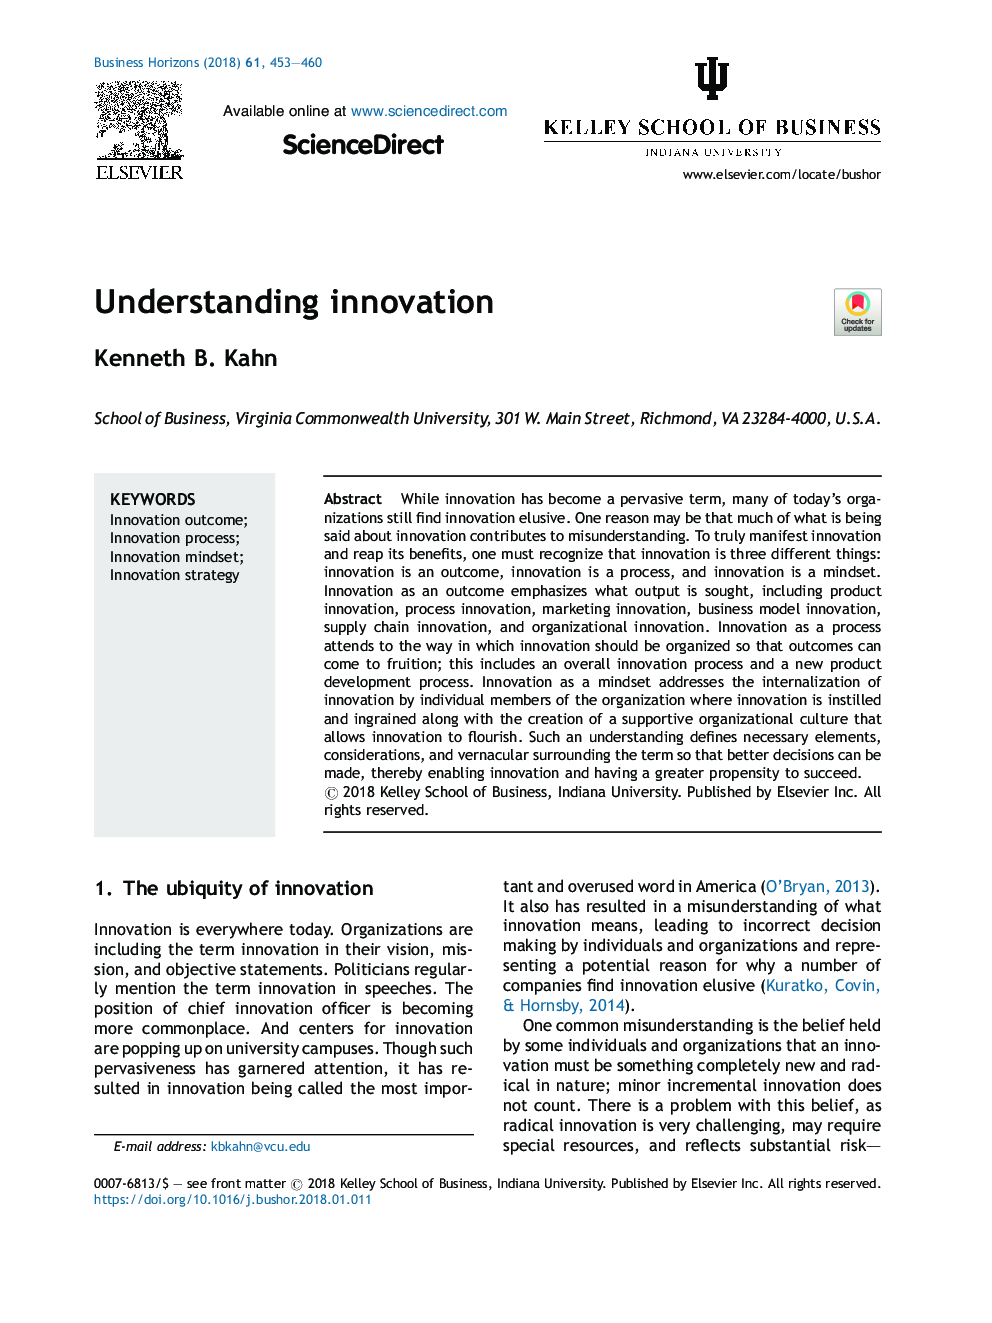 Understanding innovation